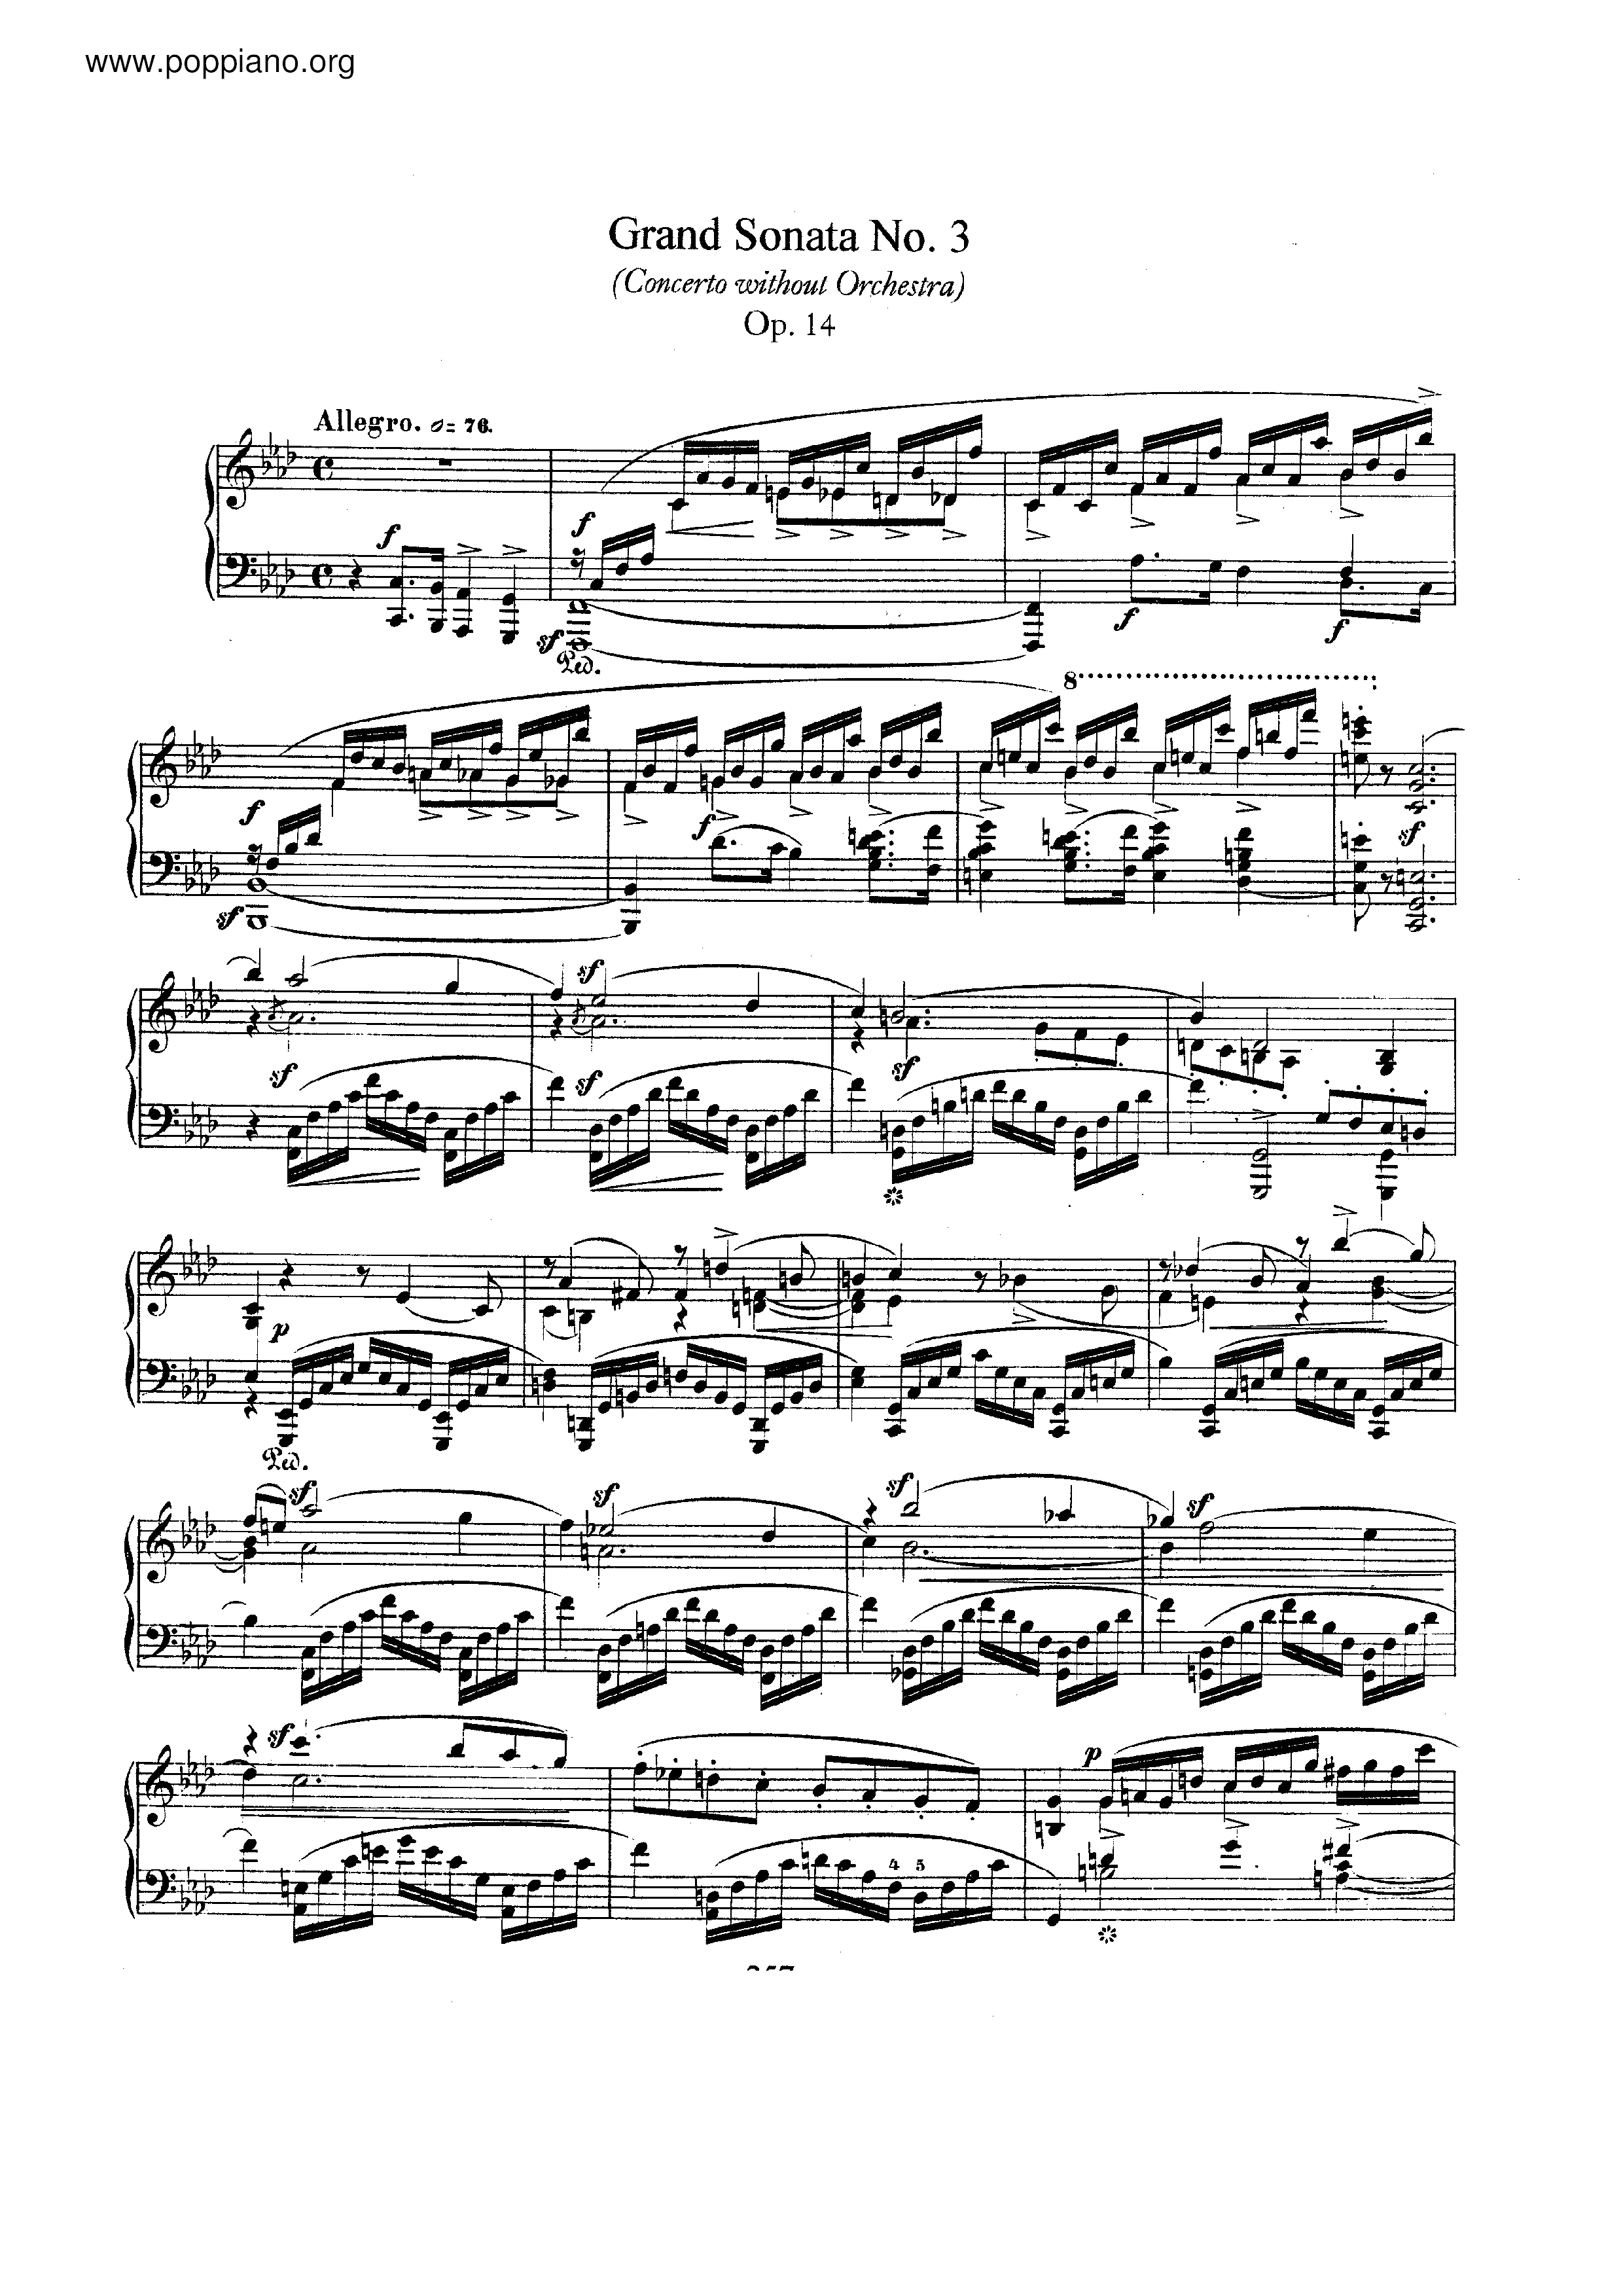 Grand Sonata No.3, Op.14 Score